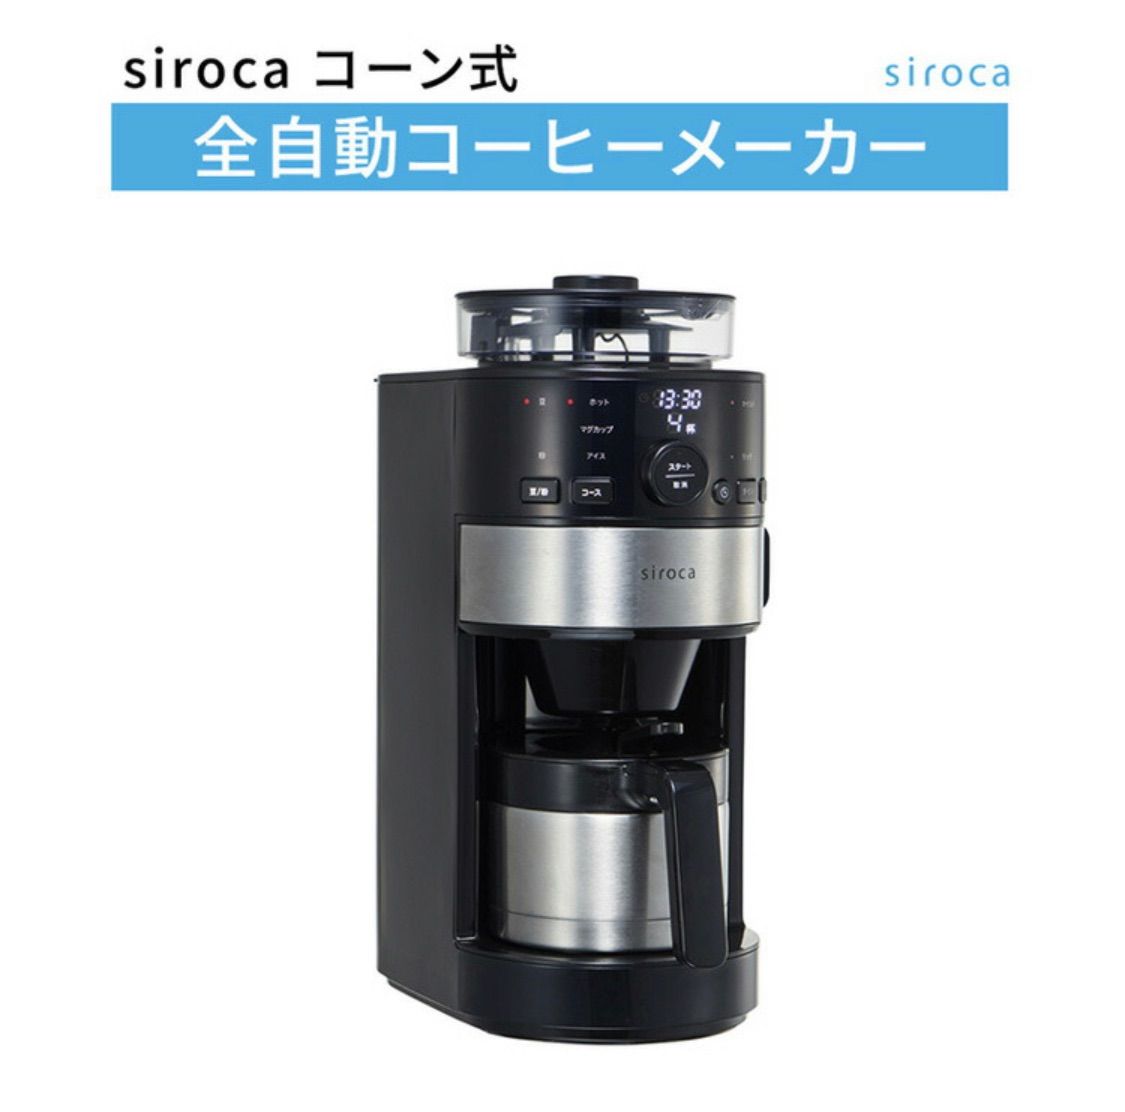 シロカ コーン式全自動コーヒーメーカー SC-C122 ステンレスシルバー